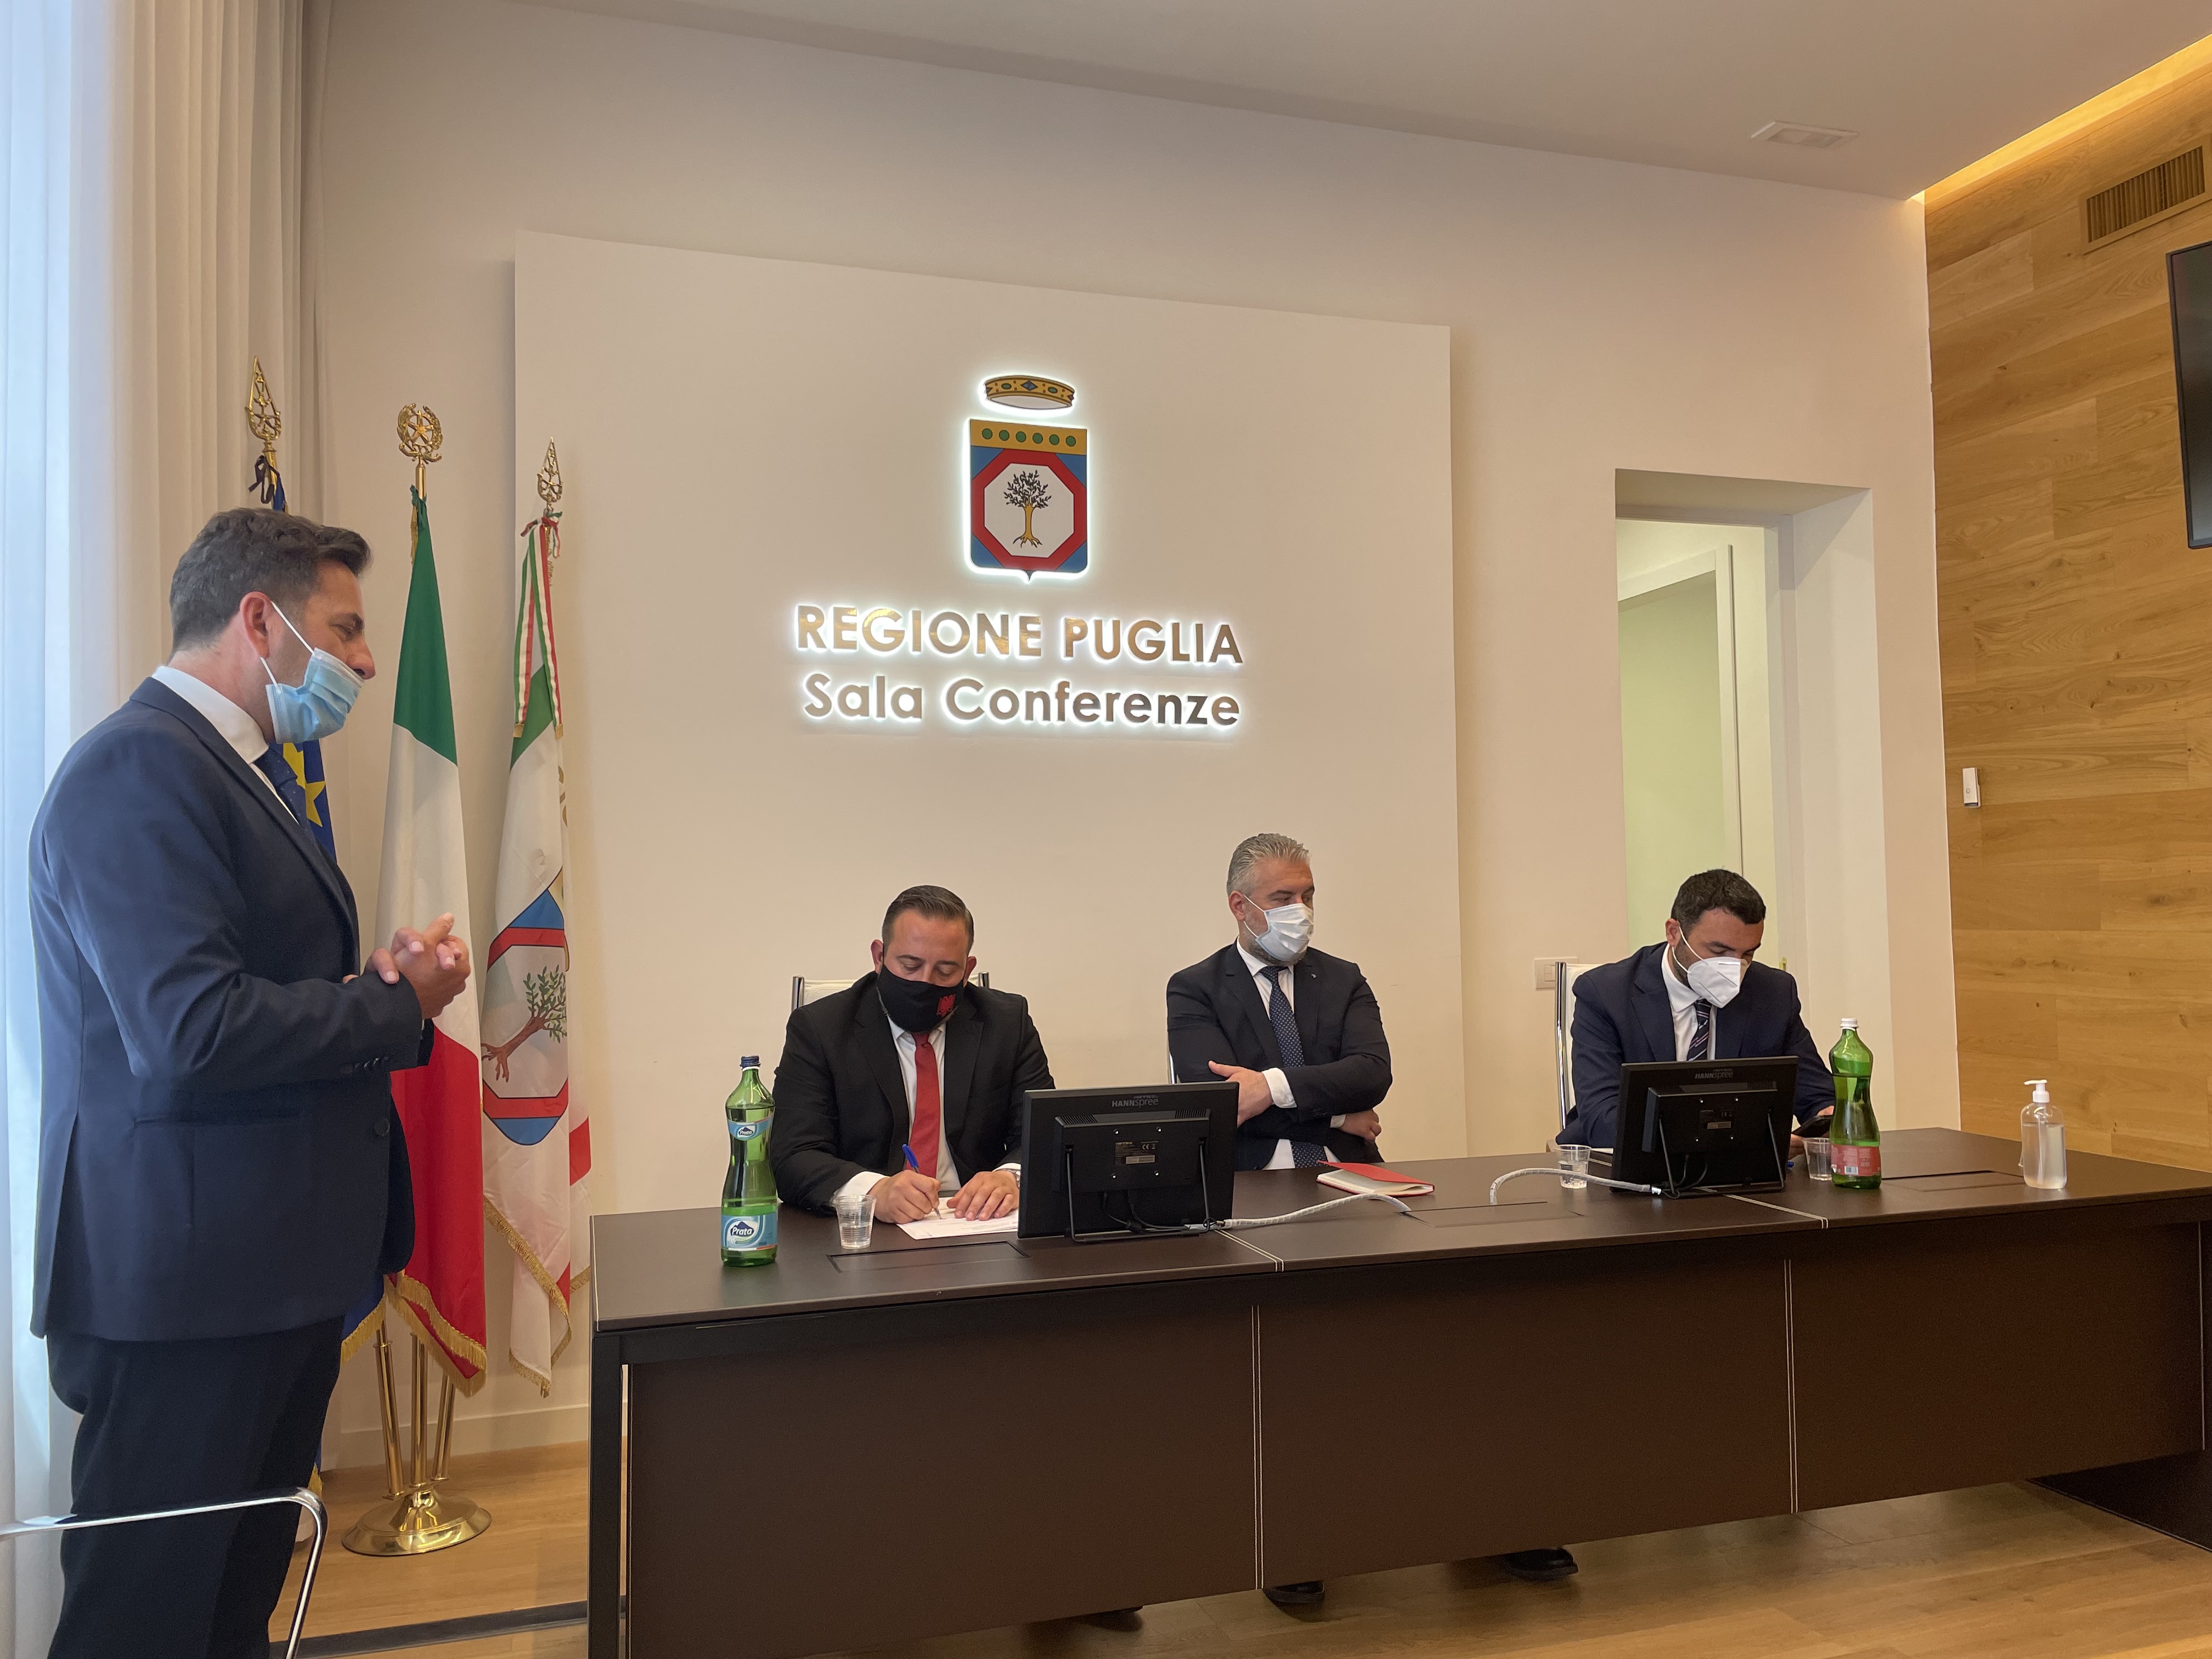 Gallery Incontri bilaterali Puglia - Albania: la cultura dell’innovazione per la crescita dei territori transfrontalieri - Slide 1 of 11